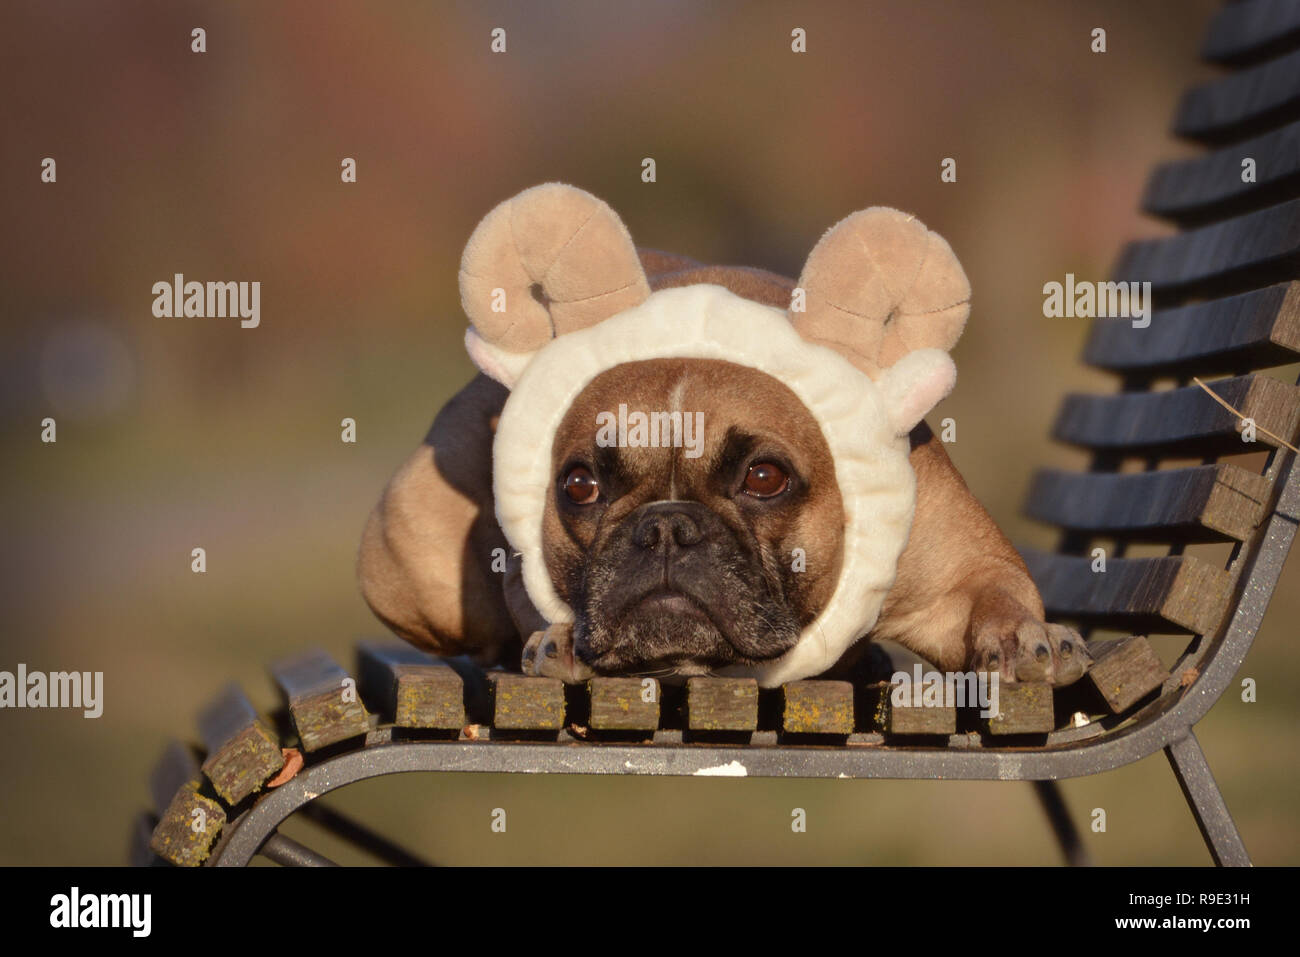 Fawn Französische Bulldogge Hund mit den Schafen, Ohren und Hörner stirnband  Kostüm liegt auf einer Bank Stockfotografie - Alamy